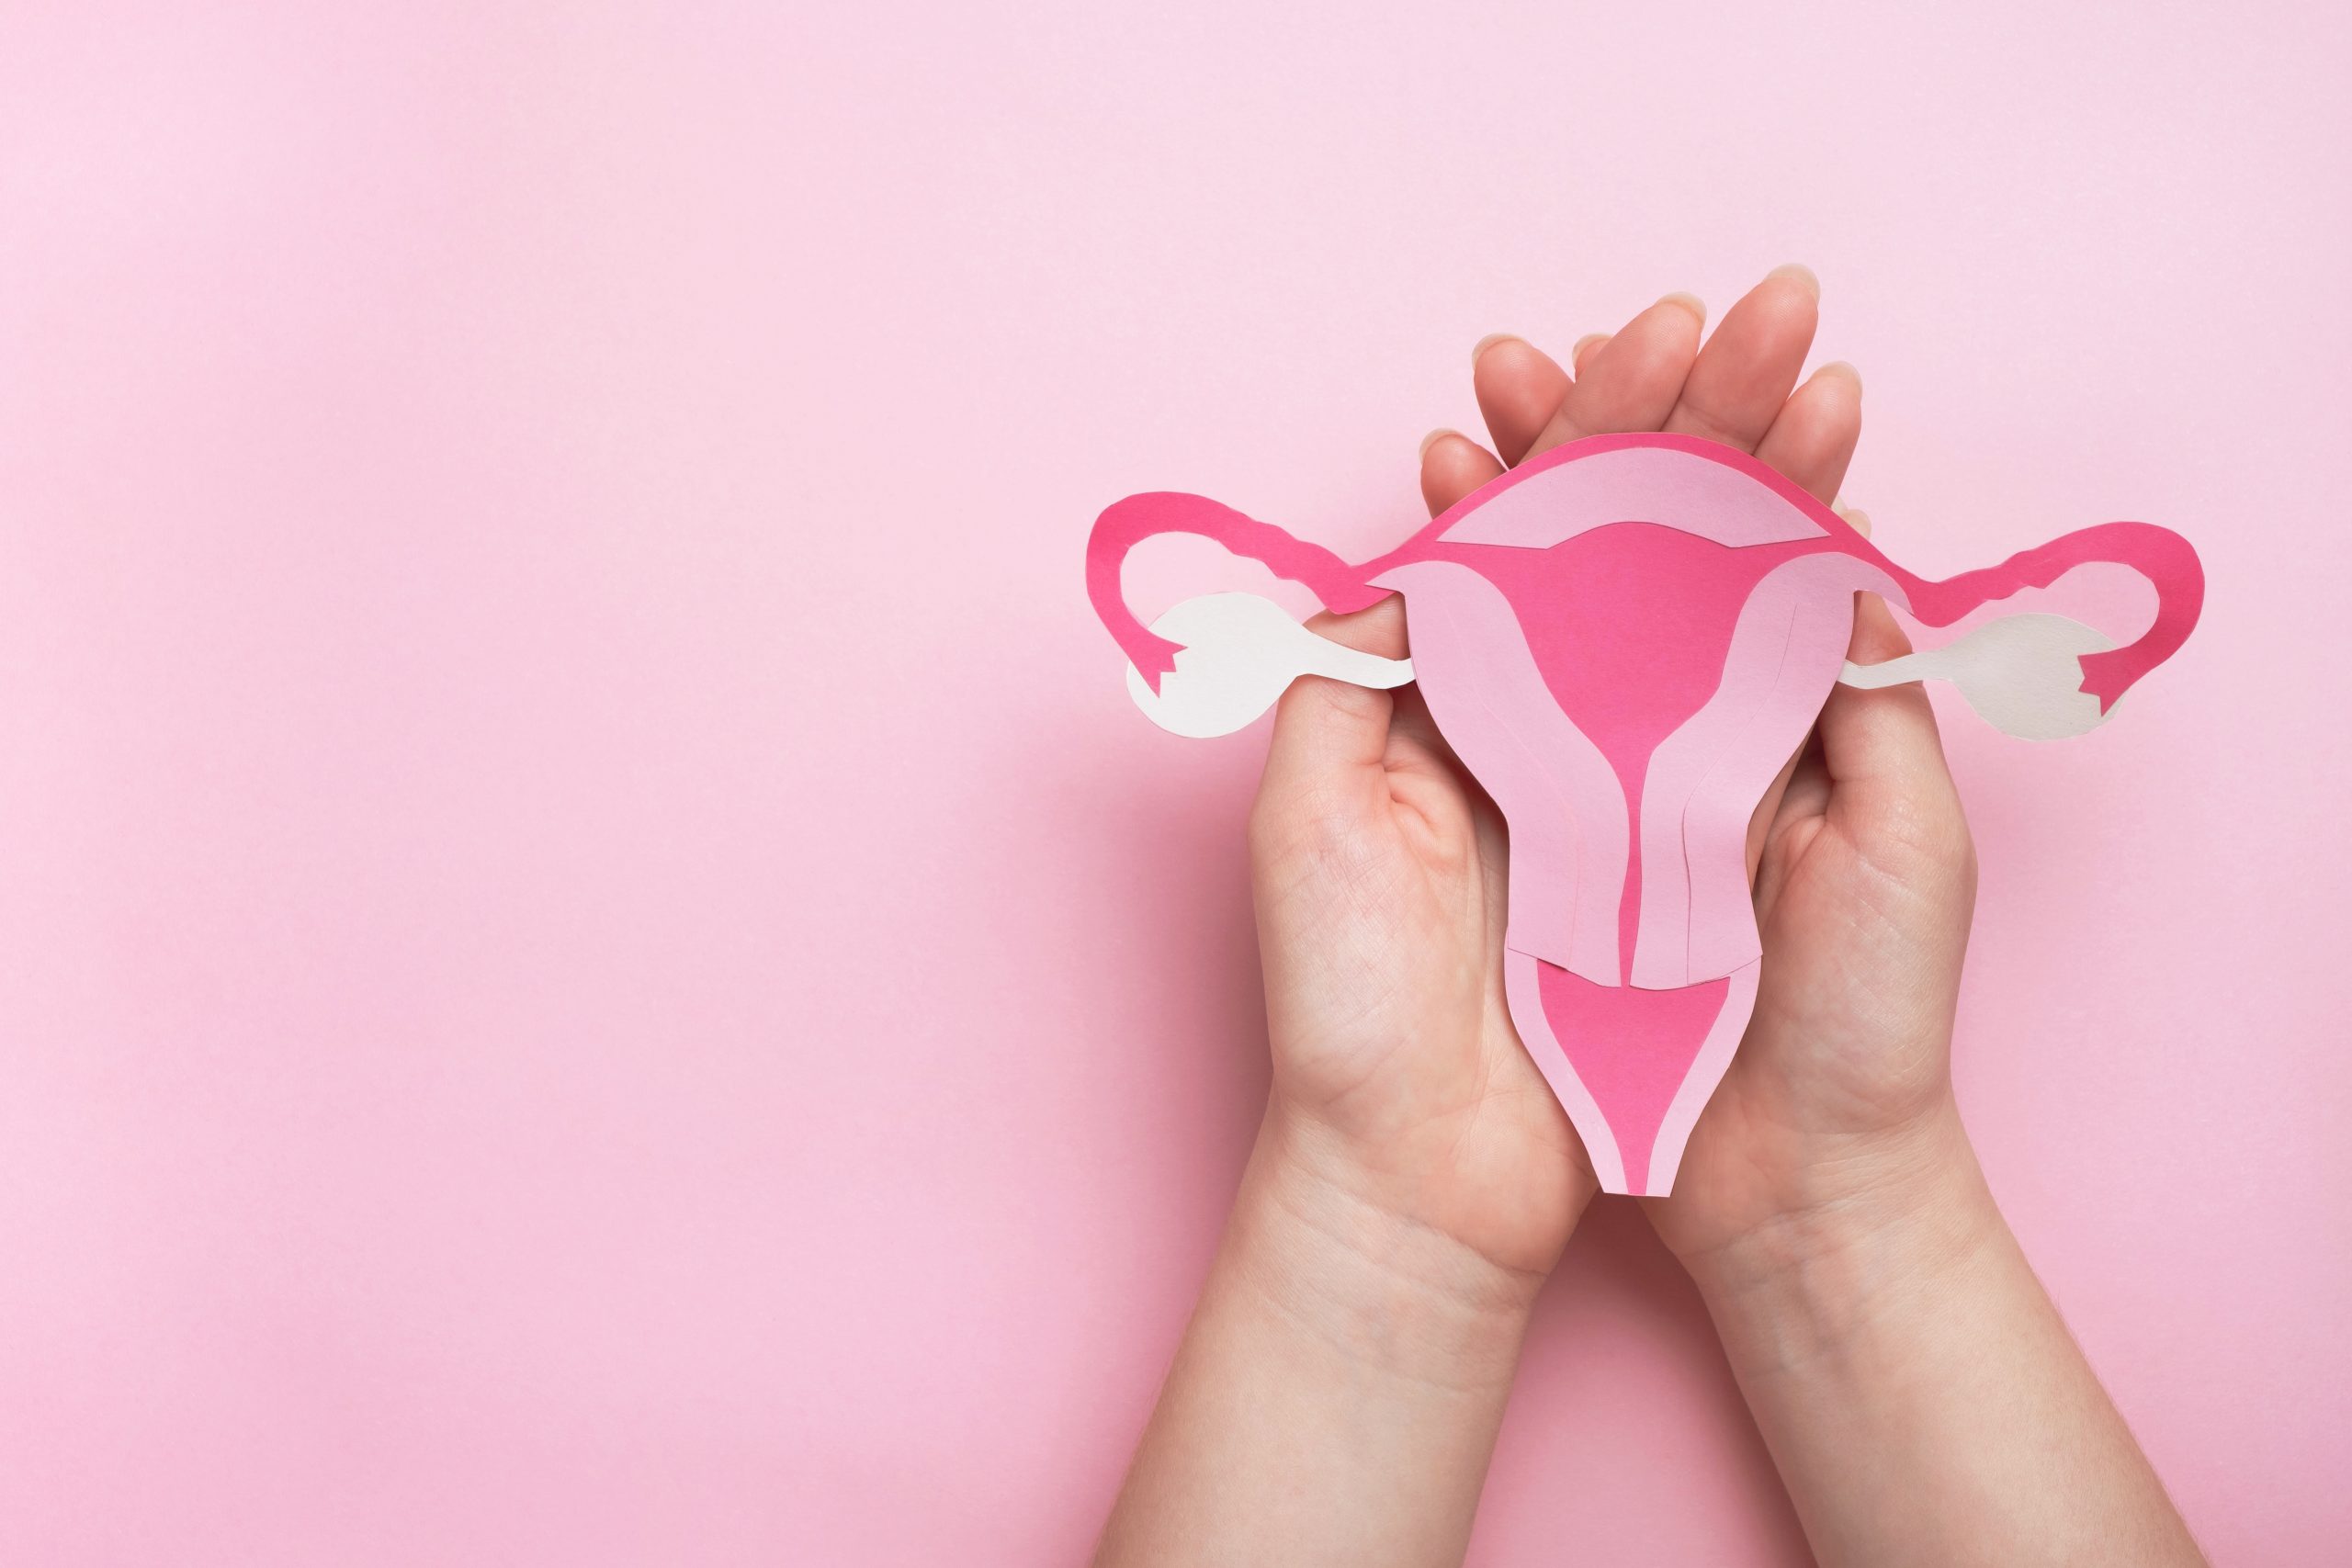 Seis entre dez abortos espontâneos recorrentes têm endometrite crônica como principal causa